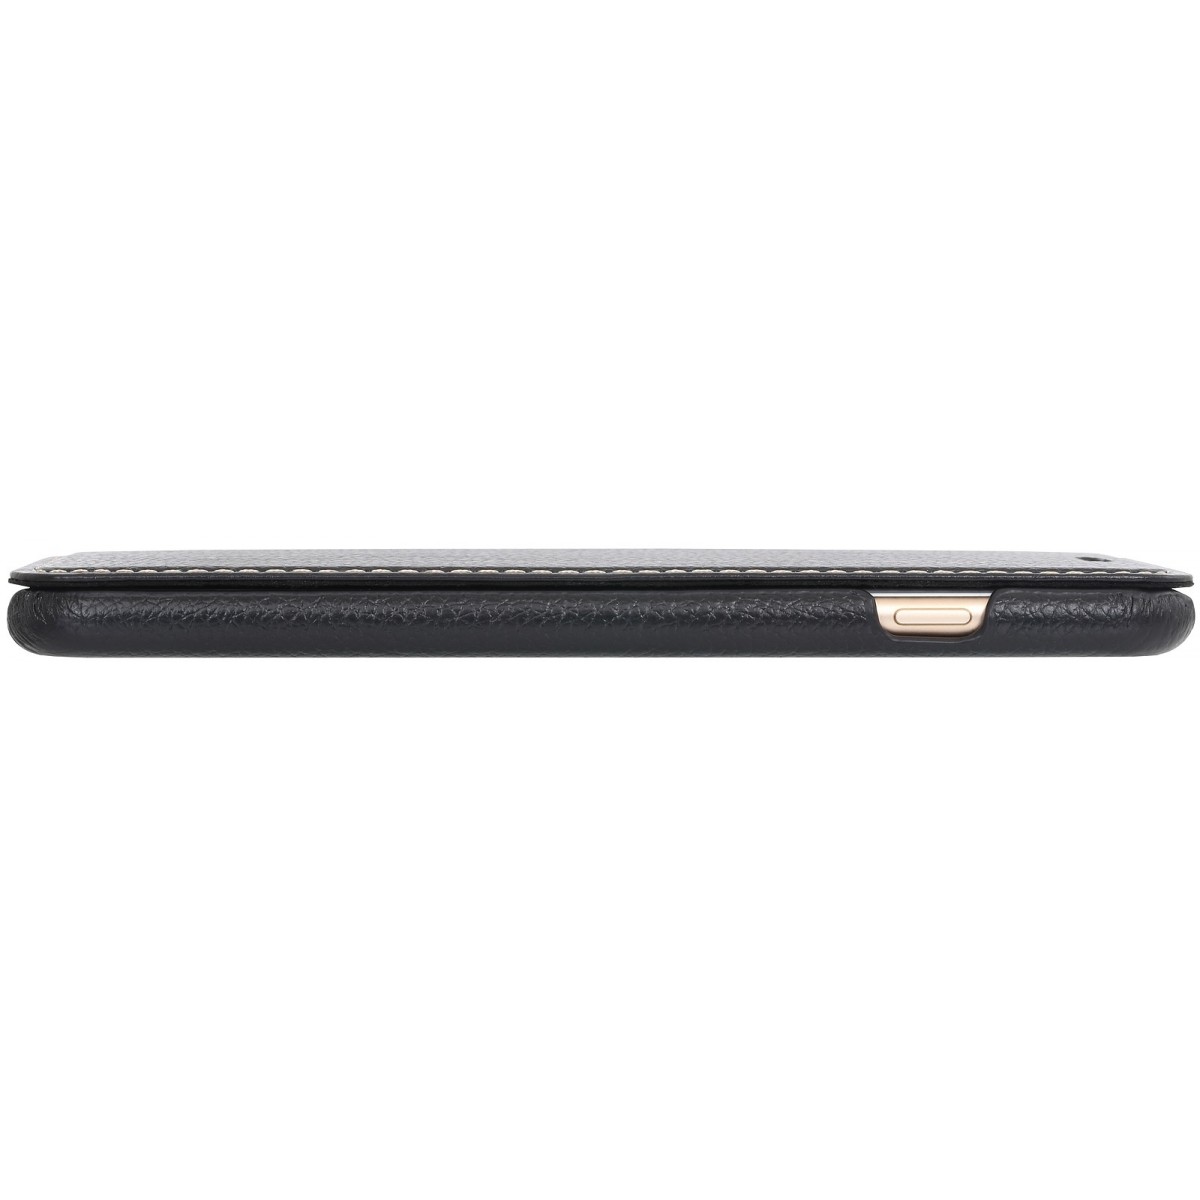 Etui iPhone 7 Plus book type noir en cuir véritable sans clip de fermeture - Stilgut